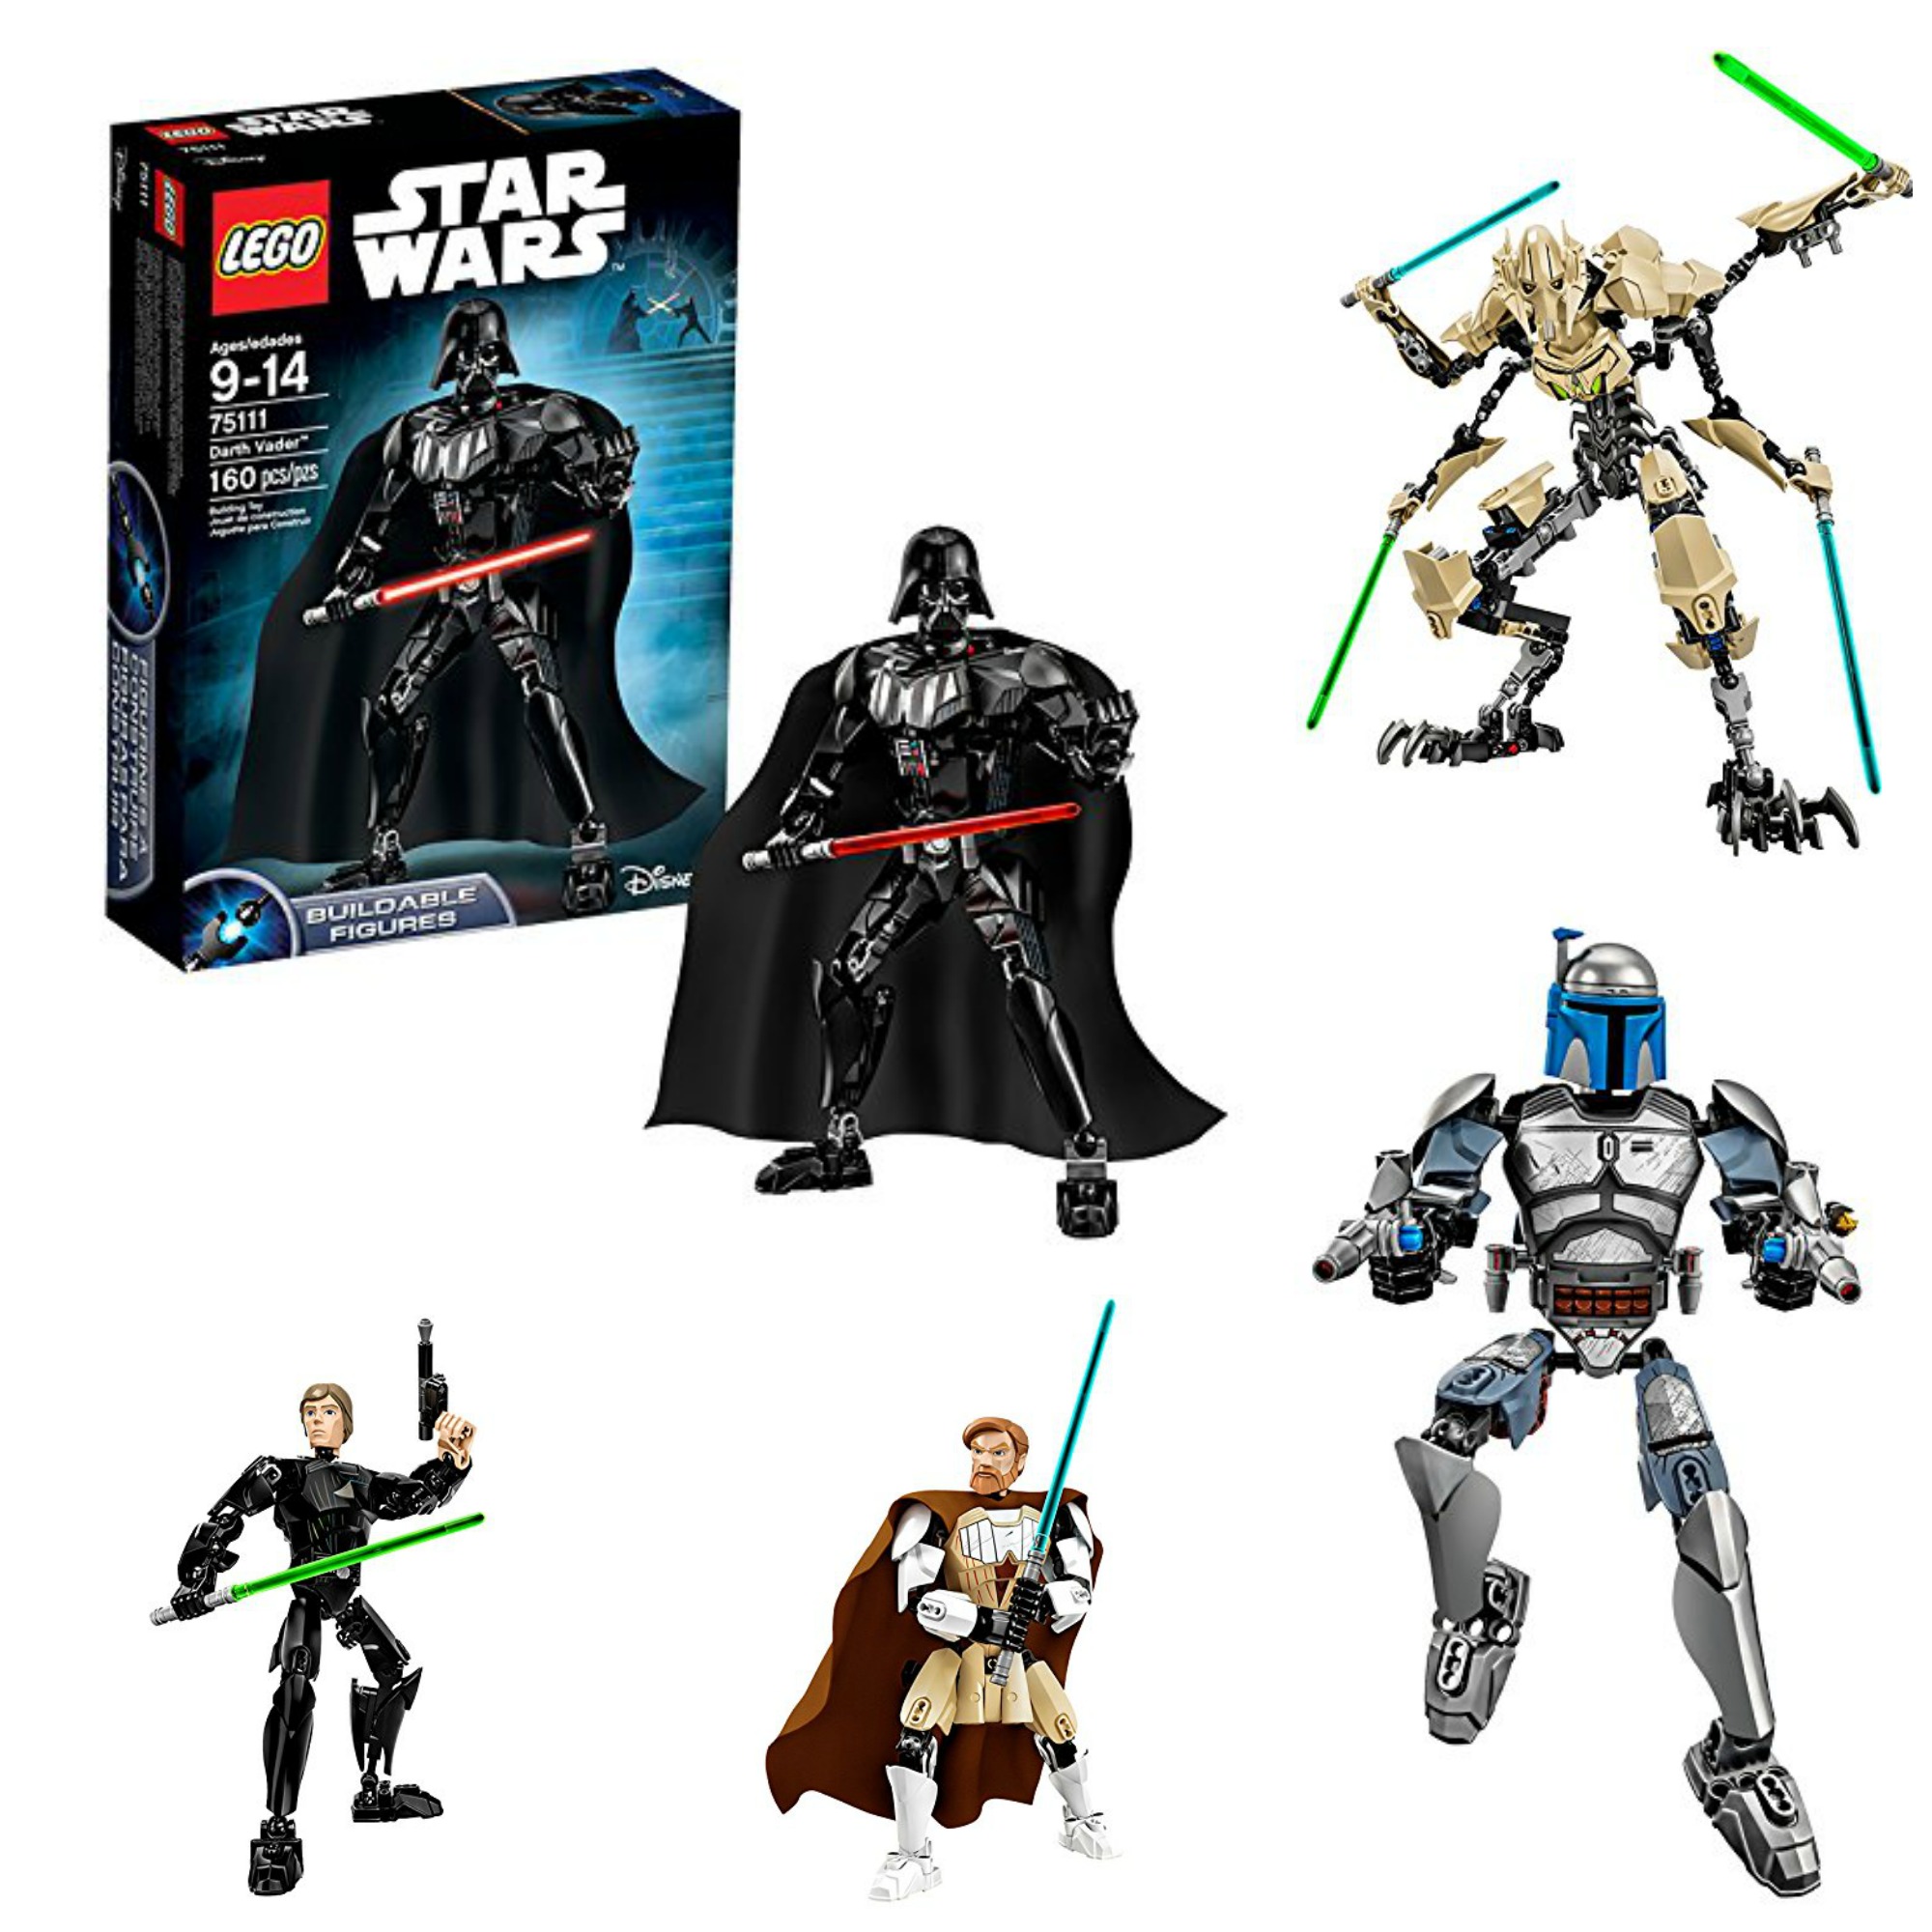 Ma wishlist de jouets Star Wars pour Noel 2015 #StarWars #Lego #Hasbro